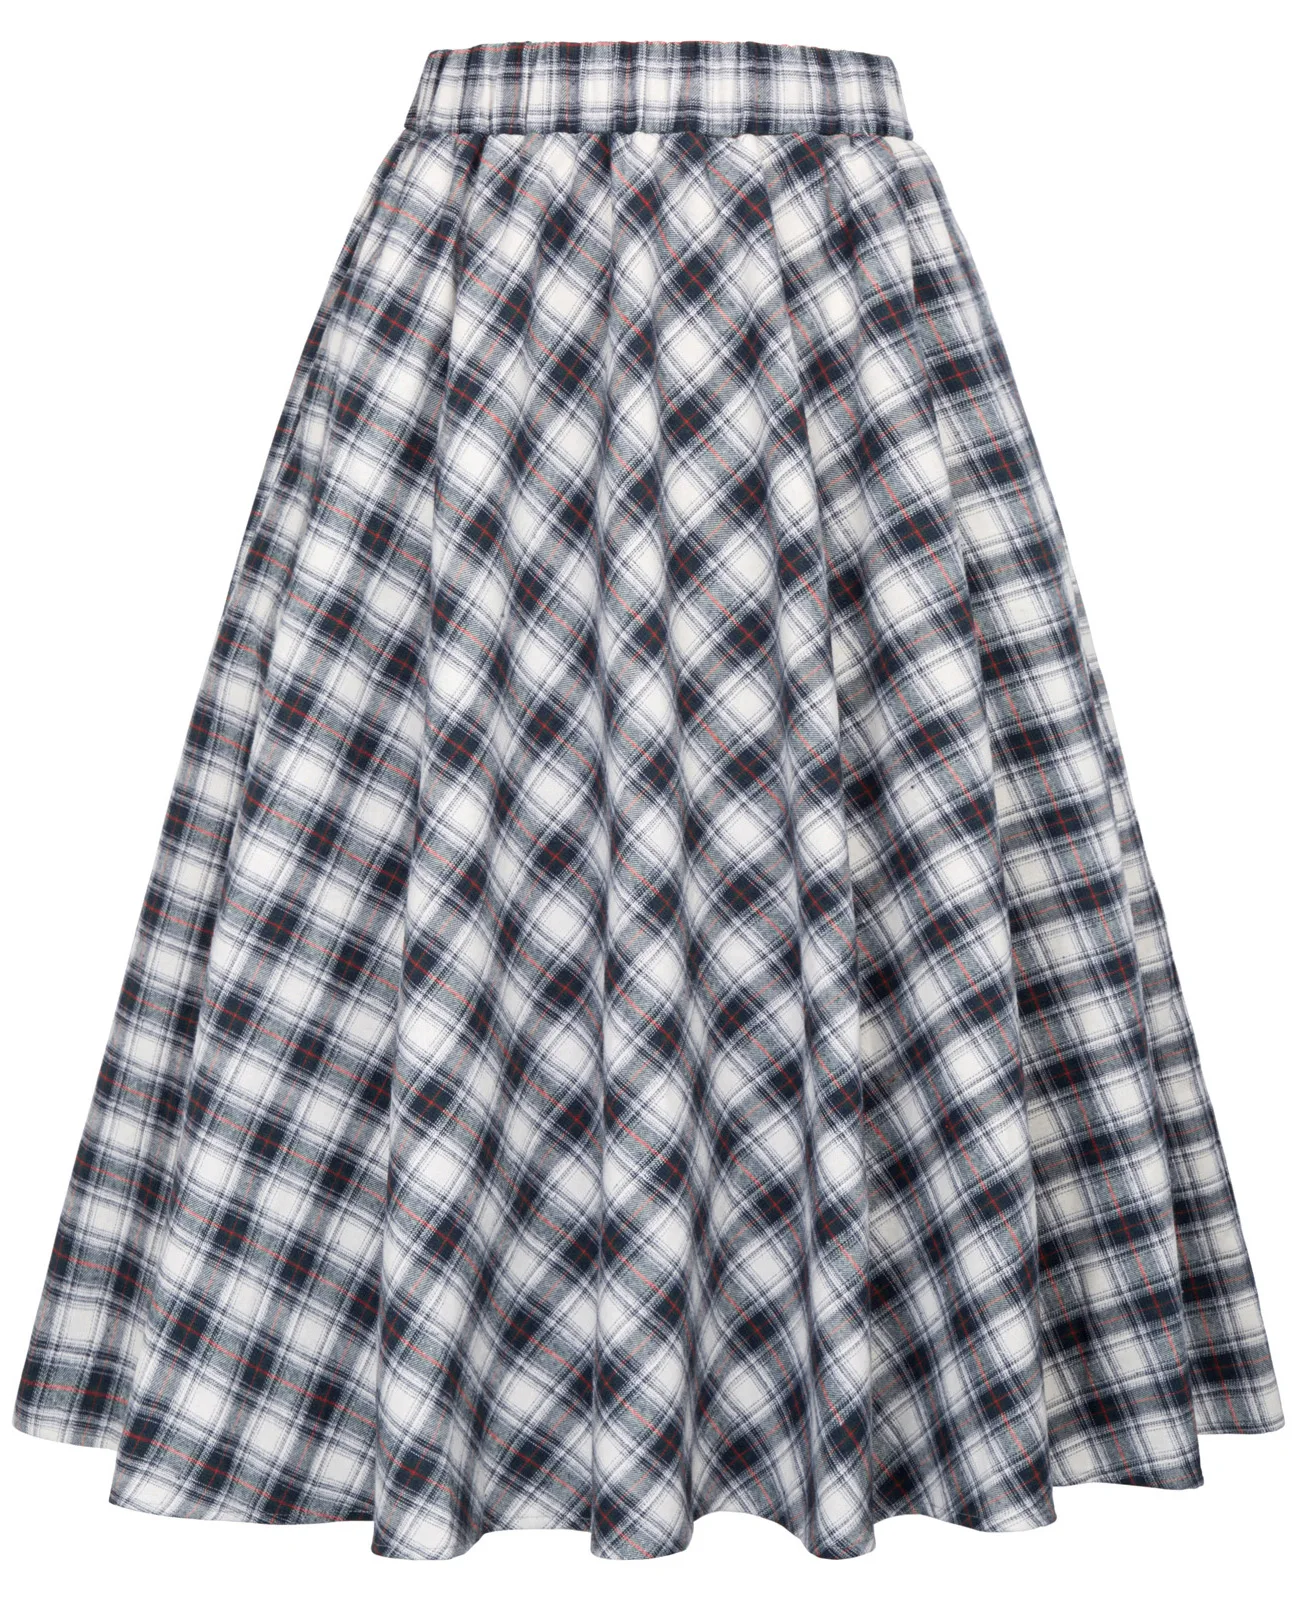 Винтажная Женская юбка с высокой талией, Ретро стиль, 50 s, клетчатая хлопковая юбка, трапециевидная юбка миди